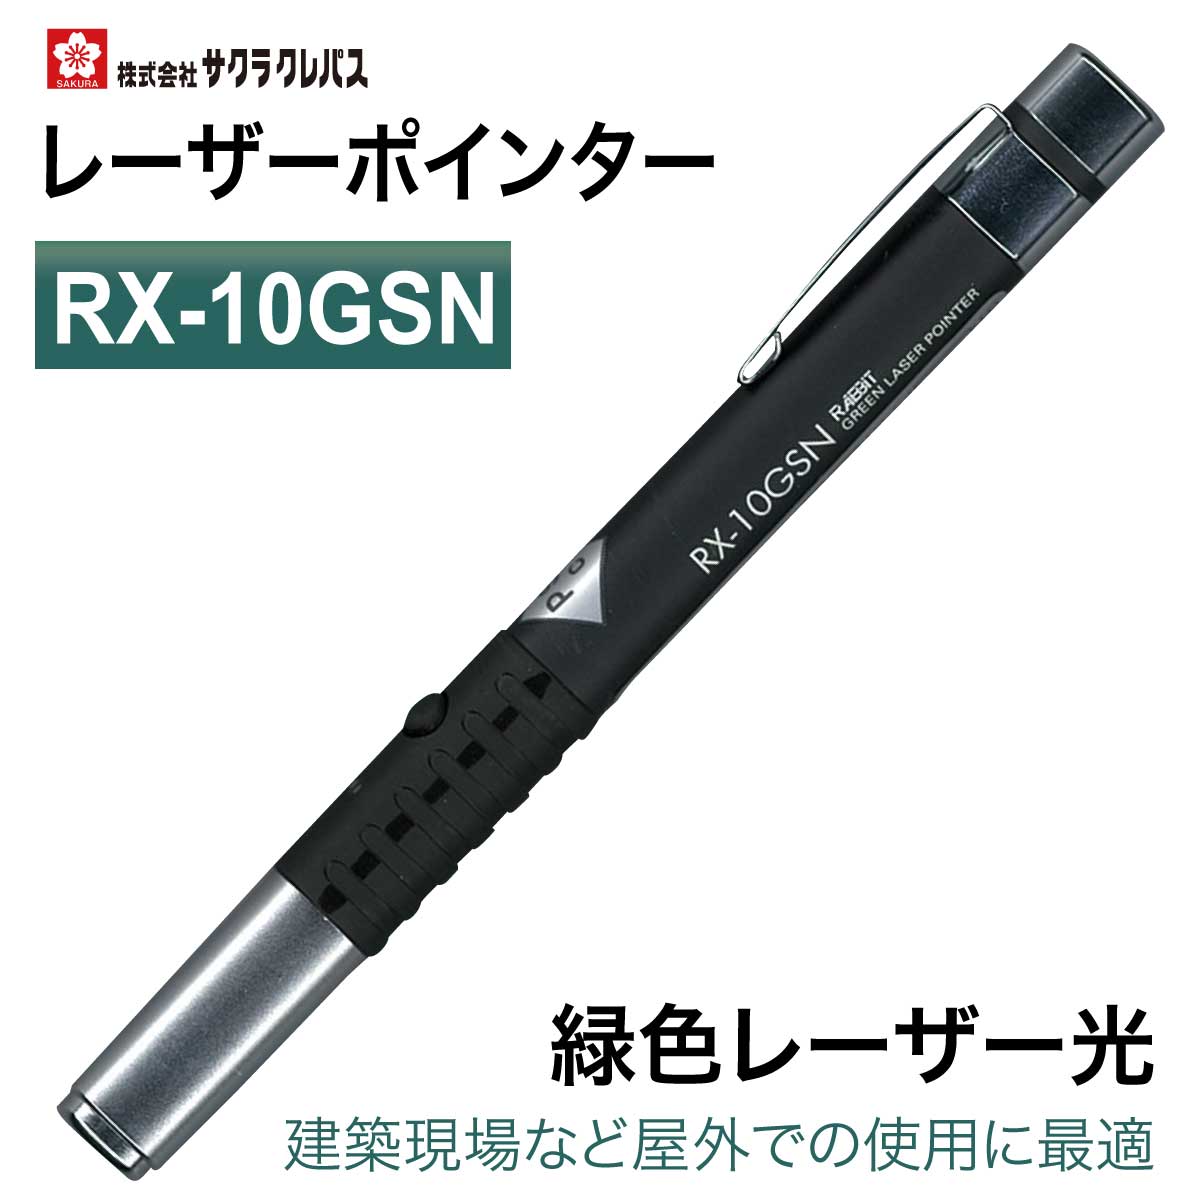 商品名レーザーポインター 緑色 レーザー ペン型 RX-10GSN ■モニターの都合上、掲載写真と実際の色が異なる場合がございます点ご了承ください。ブランドサクラクレパス本体カラー黒サイズ外形寸法直径×長さ(mm)：14×157mmスペック緑色：レーザー光（532nm） 波長：532nm 出力：1mW未満＜クラス2＞ 到達距離：50m以内 ビーム径：3m先で3～7mm電源アルカリ単4電池　2本(付属/テスト用) 電池寿命：2時間以上その他消費生活用製品安全法適合商品 防塵防滴仕様 ストラップホール付材質本体：アルミニウム 重量：75g(電池含む)定価21,780円(税込)レーザーポインター 緑色 レーザー ペン型 RX-10GSN到達距離：50m以内 電池寿命：連続2時間以上 防塵防滴仕様 波長(m)：532n 出力：1mW未満(クラス2) 消費生活用製品安全法適合商品 ストラップホール付 外形寸法(mm)直径×長さ：φ14×157 レーザー色：緑 電源：単4電池×2本(付属)グリーンレーザーポインター建築現場など屋外での使用に最適 ●防滴・防塵（IP65）機能搭載 ●滑りにくいラバーグリップ付き ●ストラップホール付き 関連商品はこちら[リヒトラブ] ペンケース 2wayタイプ 仕...1,000円[リヒトラブ] スタンド ペンケース SMAR...1,150円[コクヨ] クラシカル ポーチ ペンケース...792円[リヒトラブ] スタンドペンケース プニ...1,500円[サクラクレパス] IC/ID/マイナンバーW...1,100円[サクラクレパス] スマホの改札エラーを...980円[サクラクレパス] 改札エラー防止カード...1,540円ボールペン 名入れ お名前入れ [三菱鉛...5,500円名入れ シャープペン [ペンテル] ケリー...1,650円ボールペン 特急名入れ ジェットストリ...1,000円